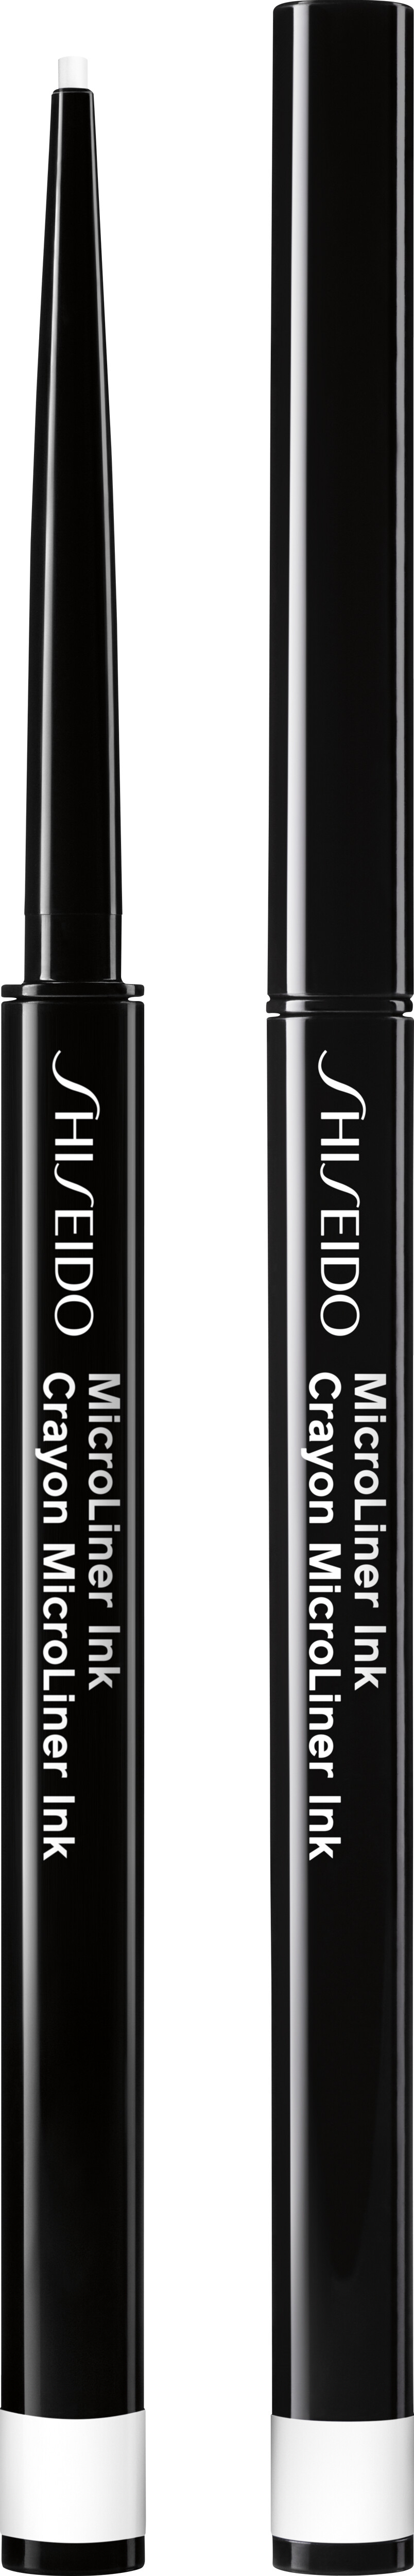 Shiseido MicroLiner Ink 0.08g 05 - White